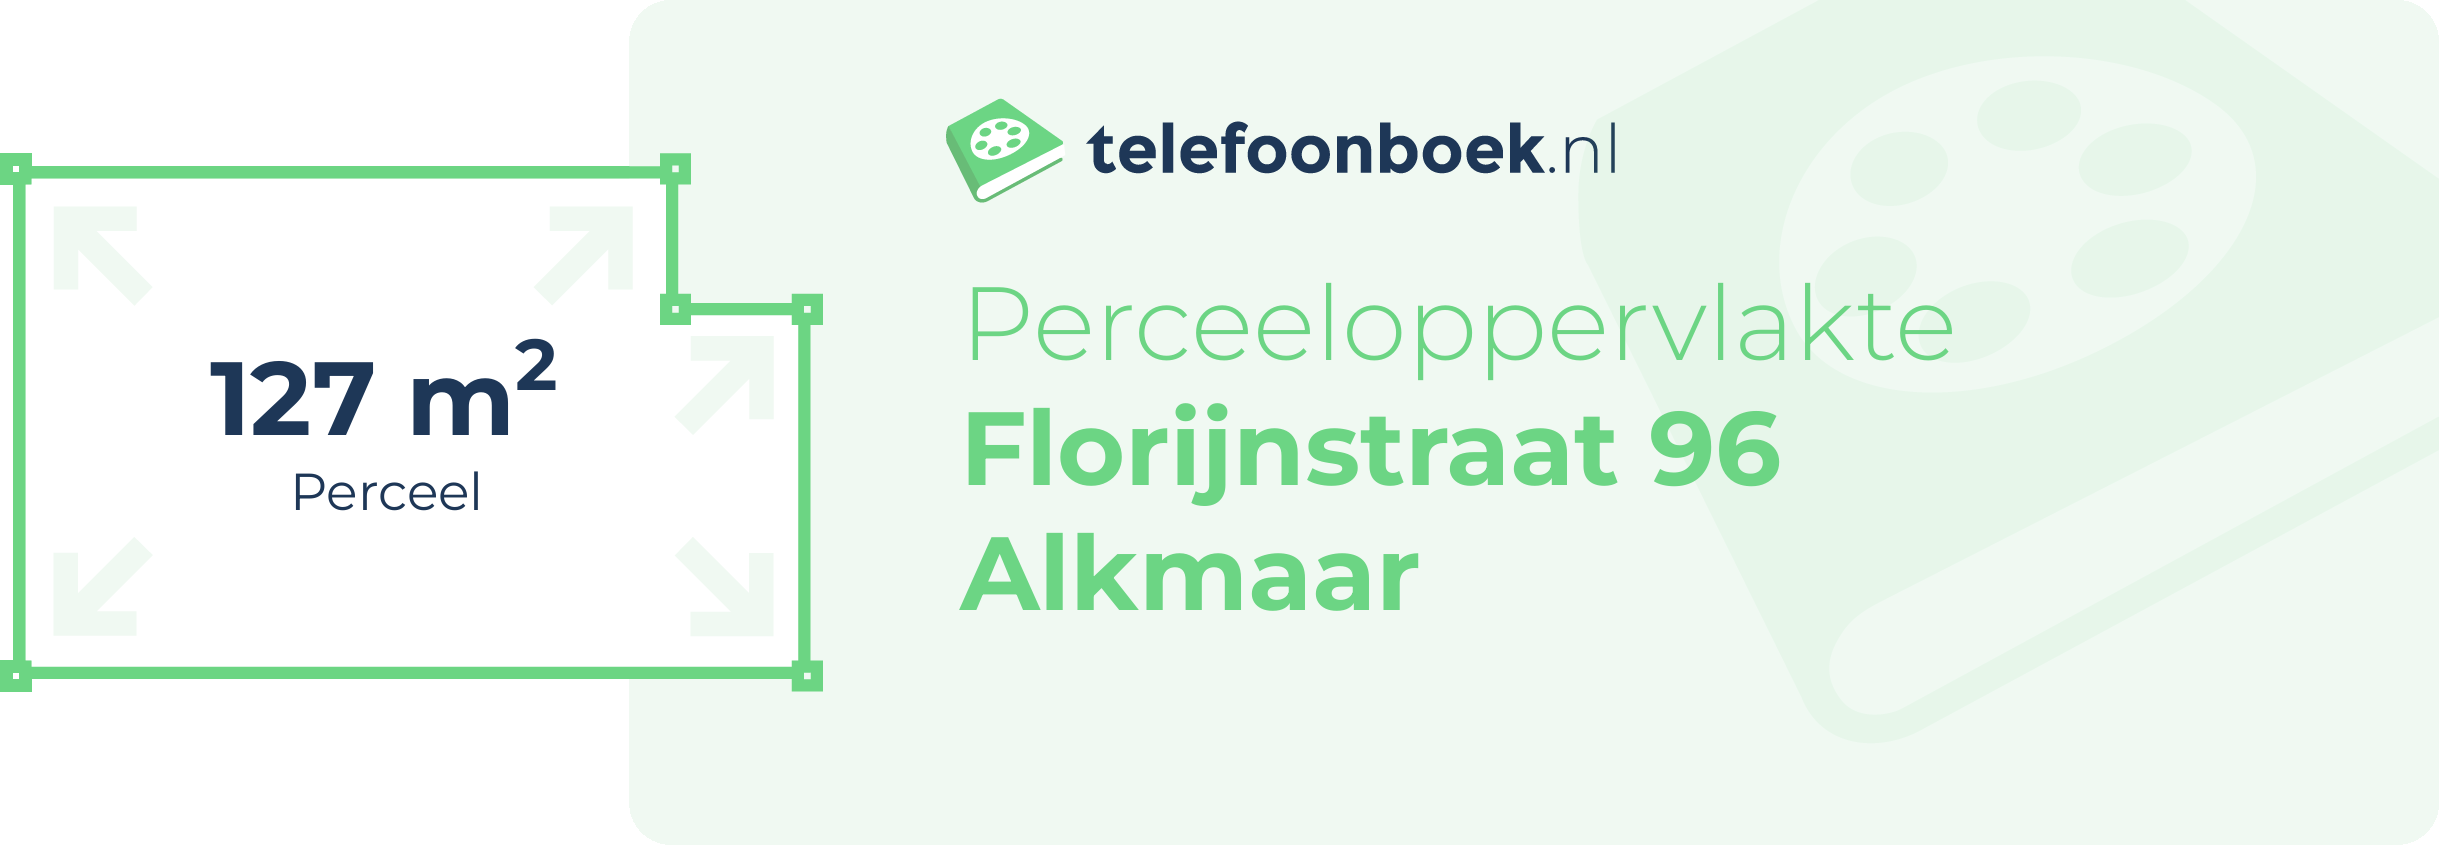 Perceeloppervlakte Florijnstraat 96 Alkmaar